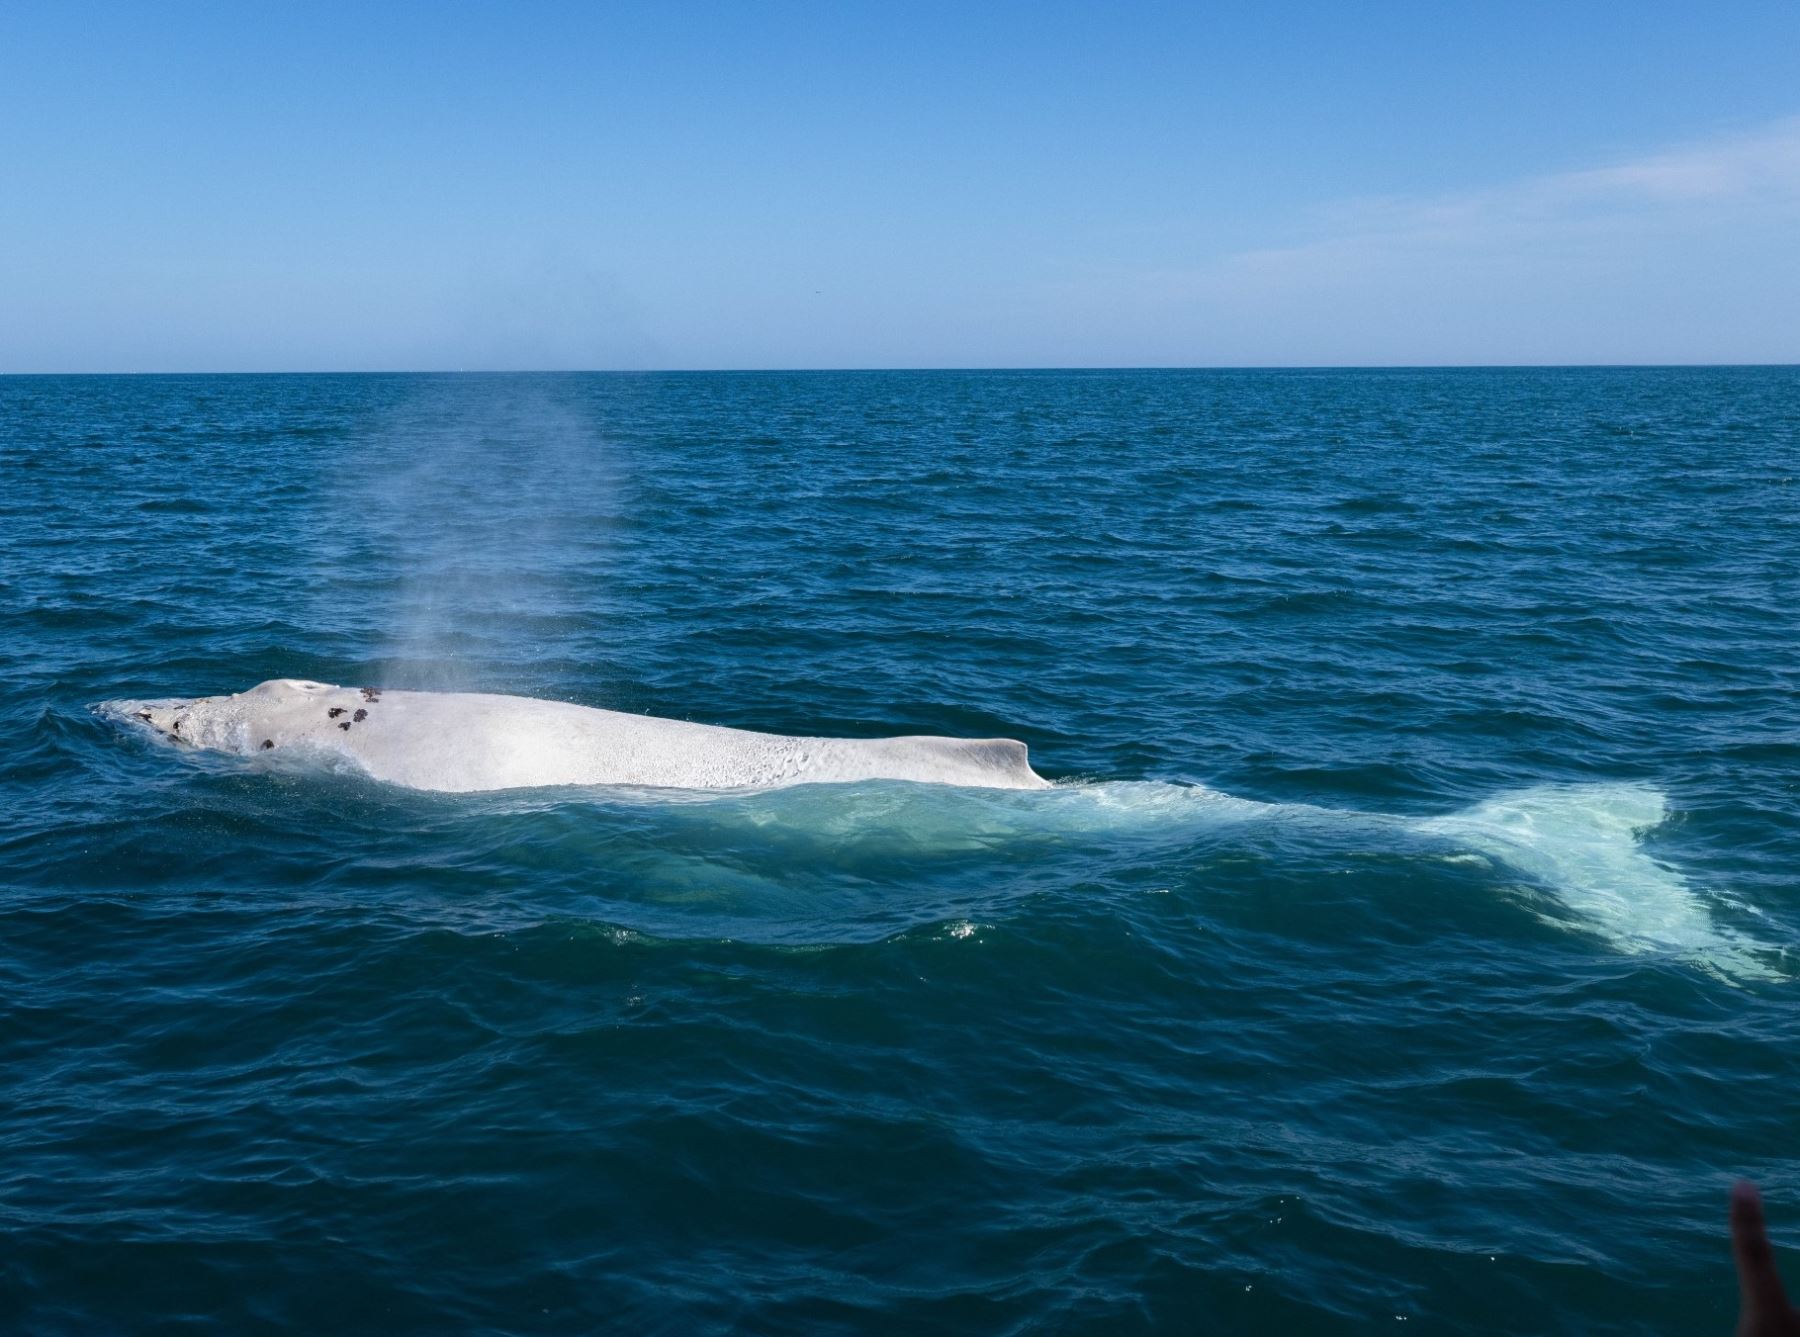 Por primera vez en el Perú avistan una ballena blanca. El acontecimiento histórico sucedió en el mar de Piura, a la altura del distrito de Los Órganos. Foto cortesía: Gustavo Carrasco Zuñiga, @gustavocarrascodp